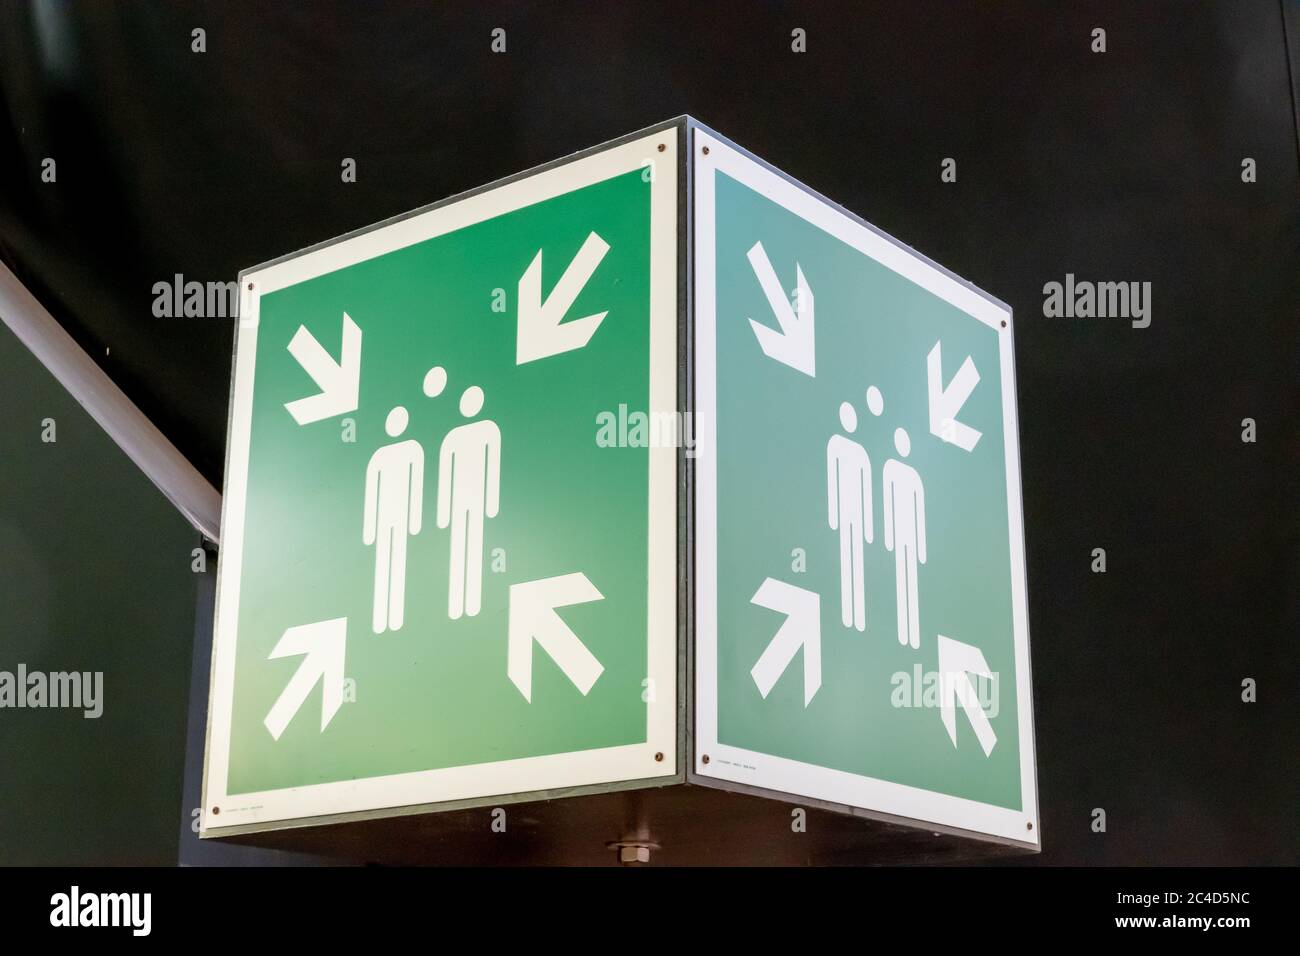 KRAUSNICK, ALLEMAGNE - 11 janvier 2020 : panneau rectangulaire vert pour un point de collecte en cas d'urgence en cas d'incendie ou de catastrophe, placé dans le HE Banque D'Images